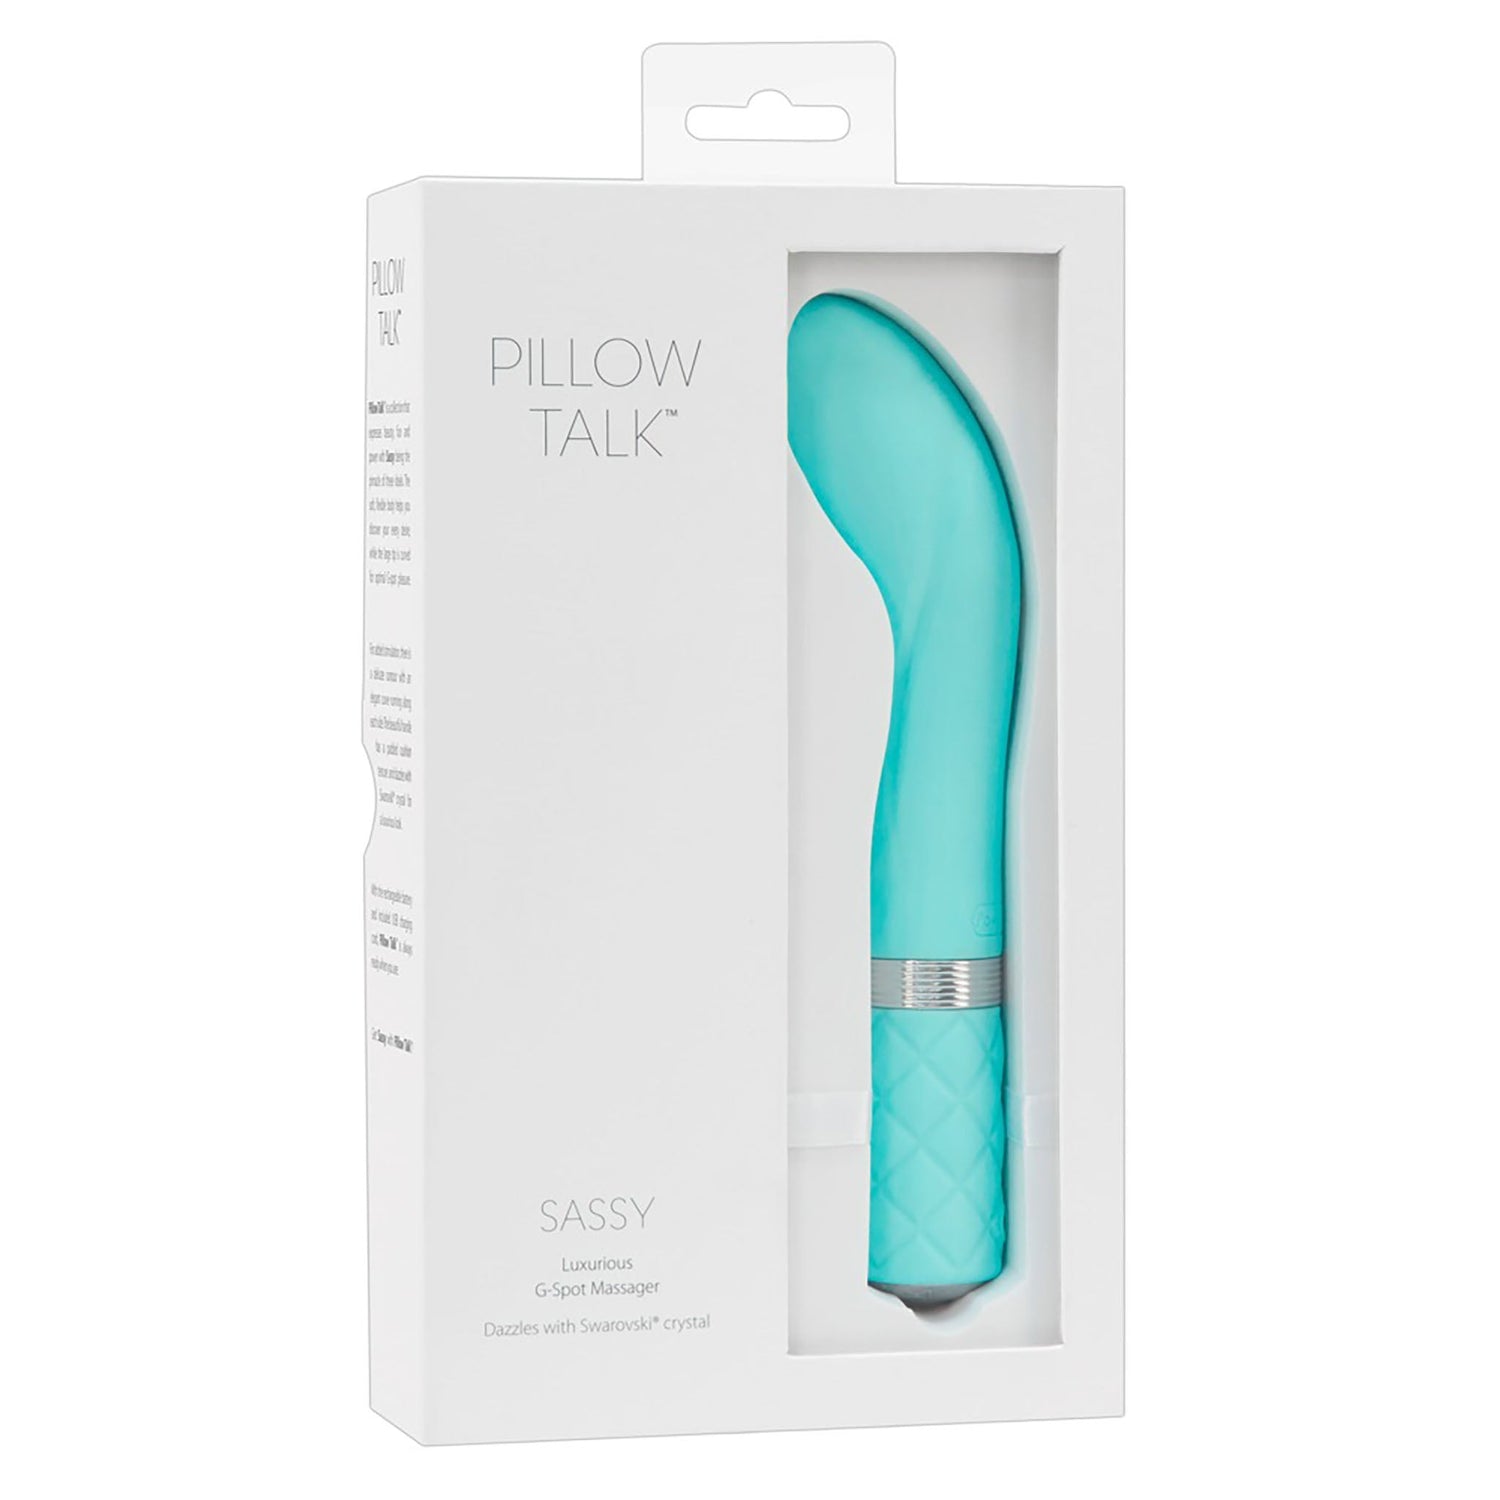 Sassy Luxurious G-Spot Massager, G-Punkt Vibrator von Pillow Talk in Verpackung